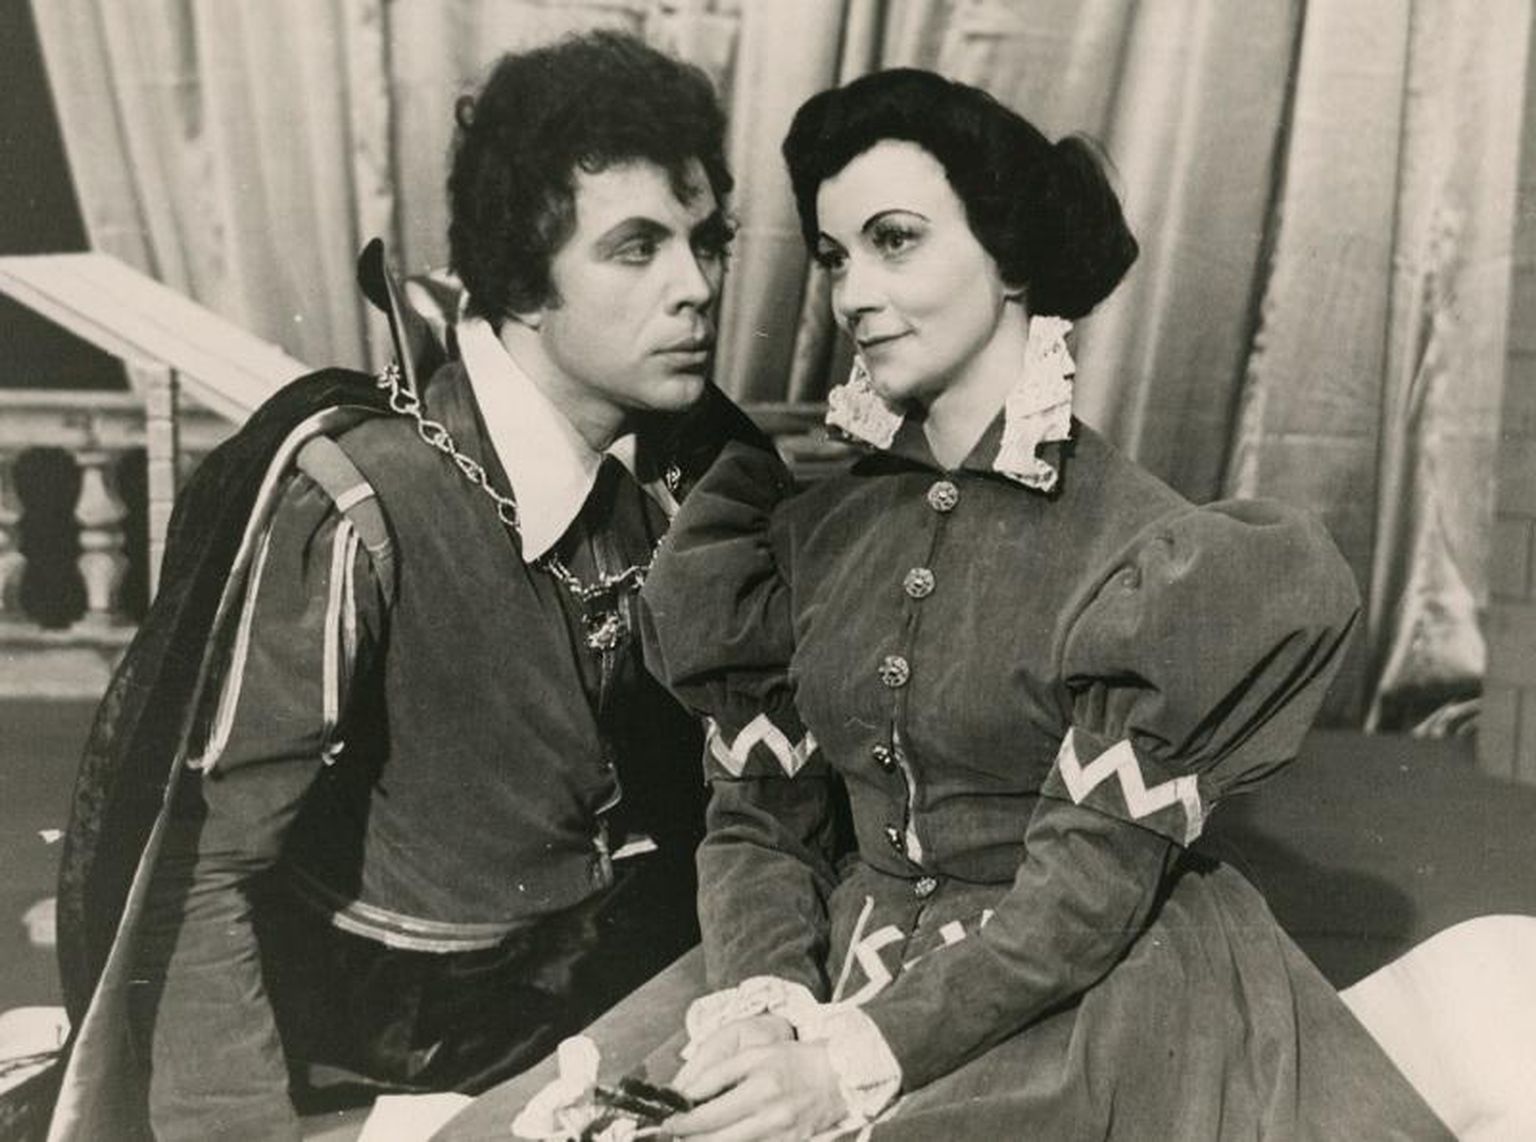 Rizzio (Ants Ander) ja Maria (Eva Novek) lavastuses "Maria Stuart" Rakvere teatris aastal 1960.